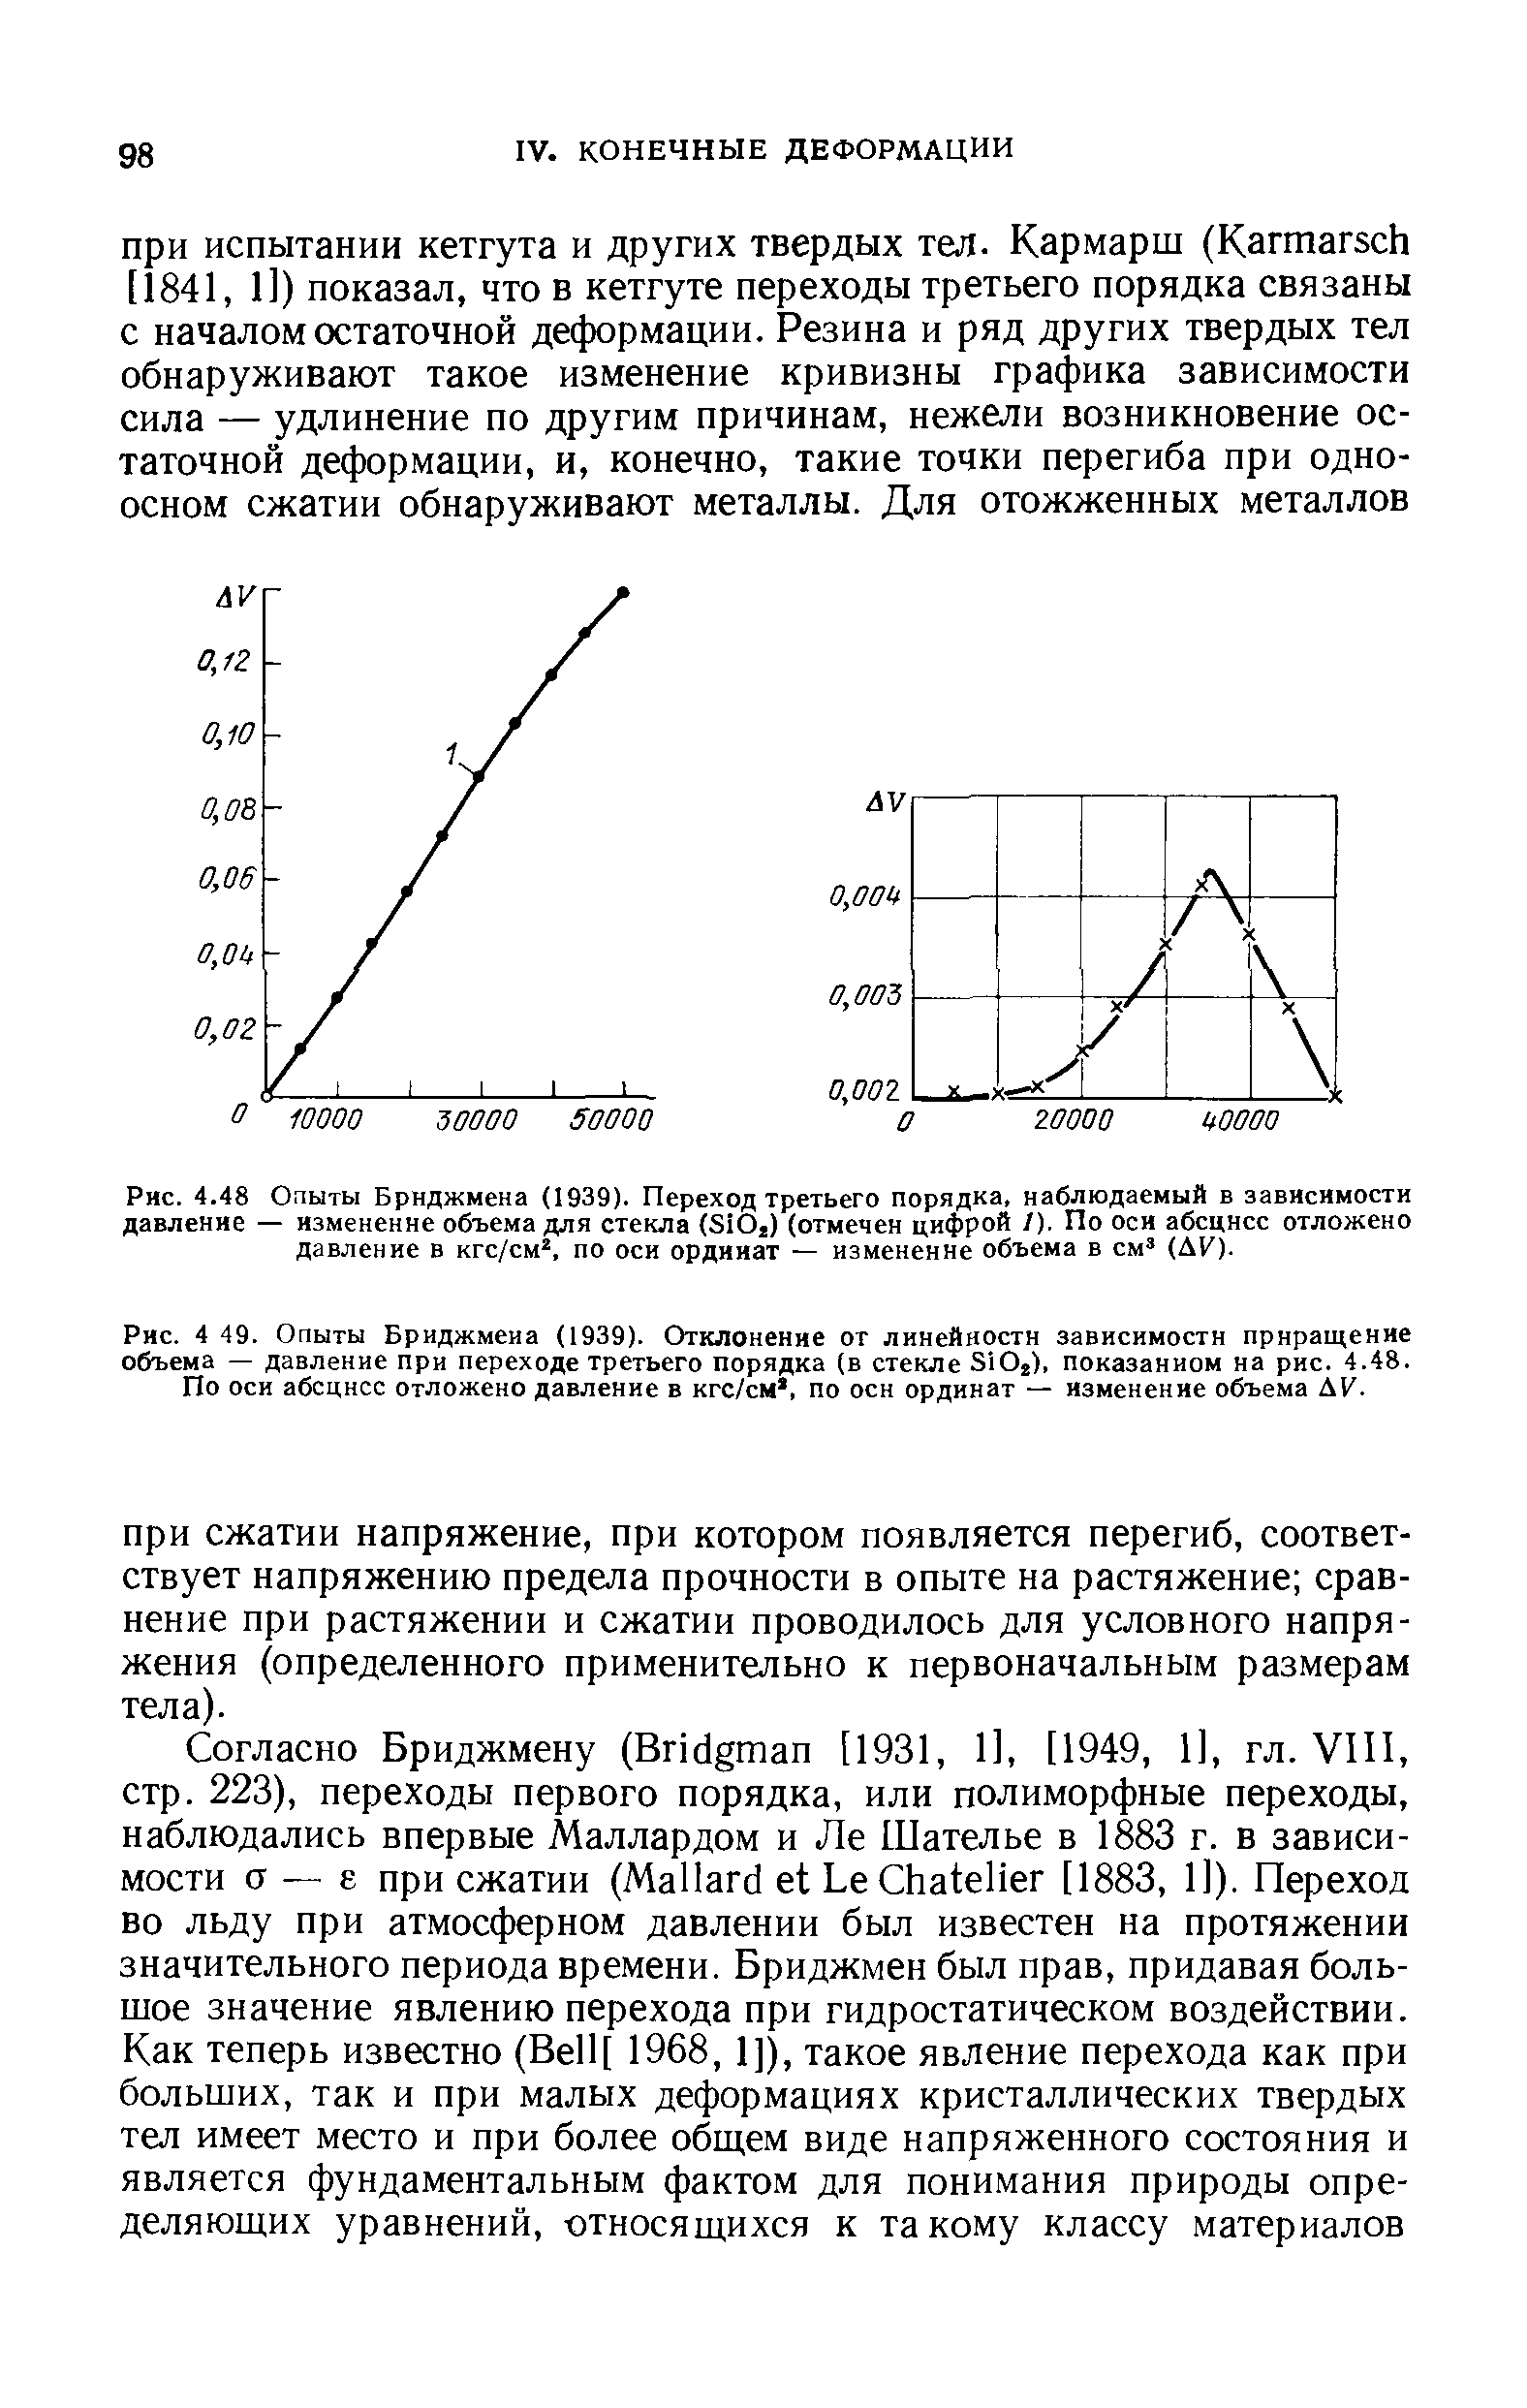 Рис. 4.48 Опыты Бриджмена (1939). Переход третьего порядка, наблюдаемый в <a href="/info/523991">зависимости давление</a> — изменение объема для стекла (SiOj) (отмечен цифрой 1). По оси абсцисс отложено давление в кгс/см , по оси ординат — изменение объема в см (Д1 )-
